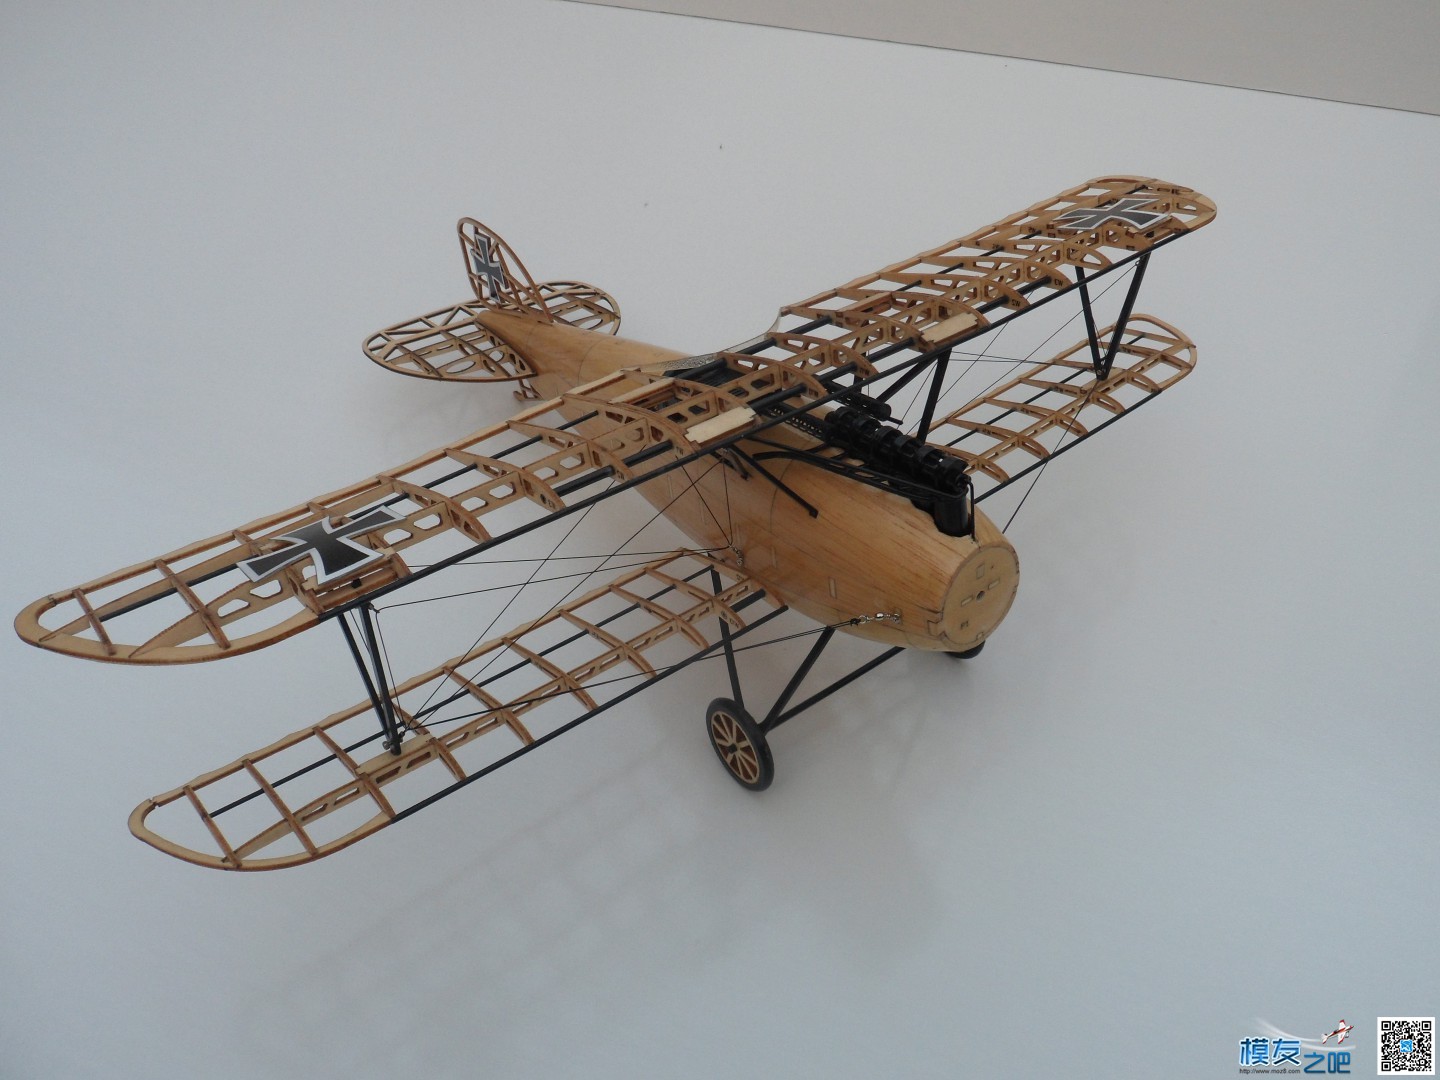 复古航模小飞机摆件 摆件,复古 作者:流年 8699 